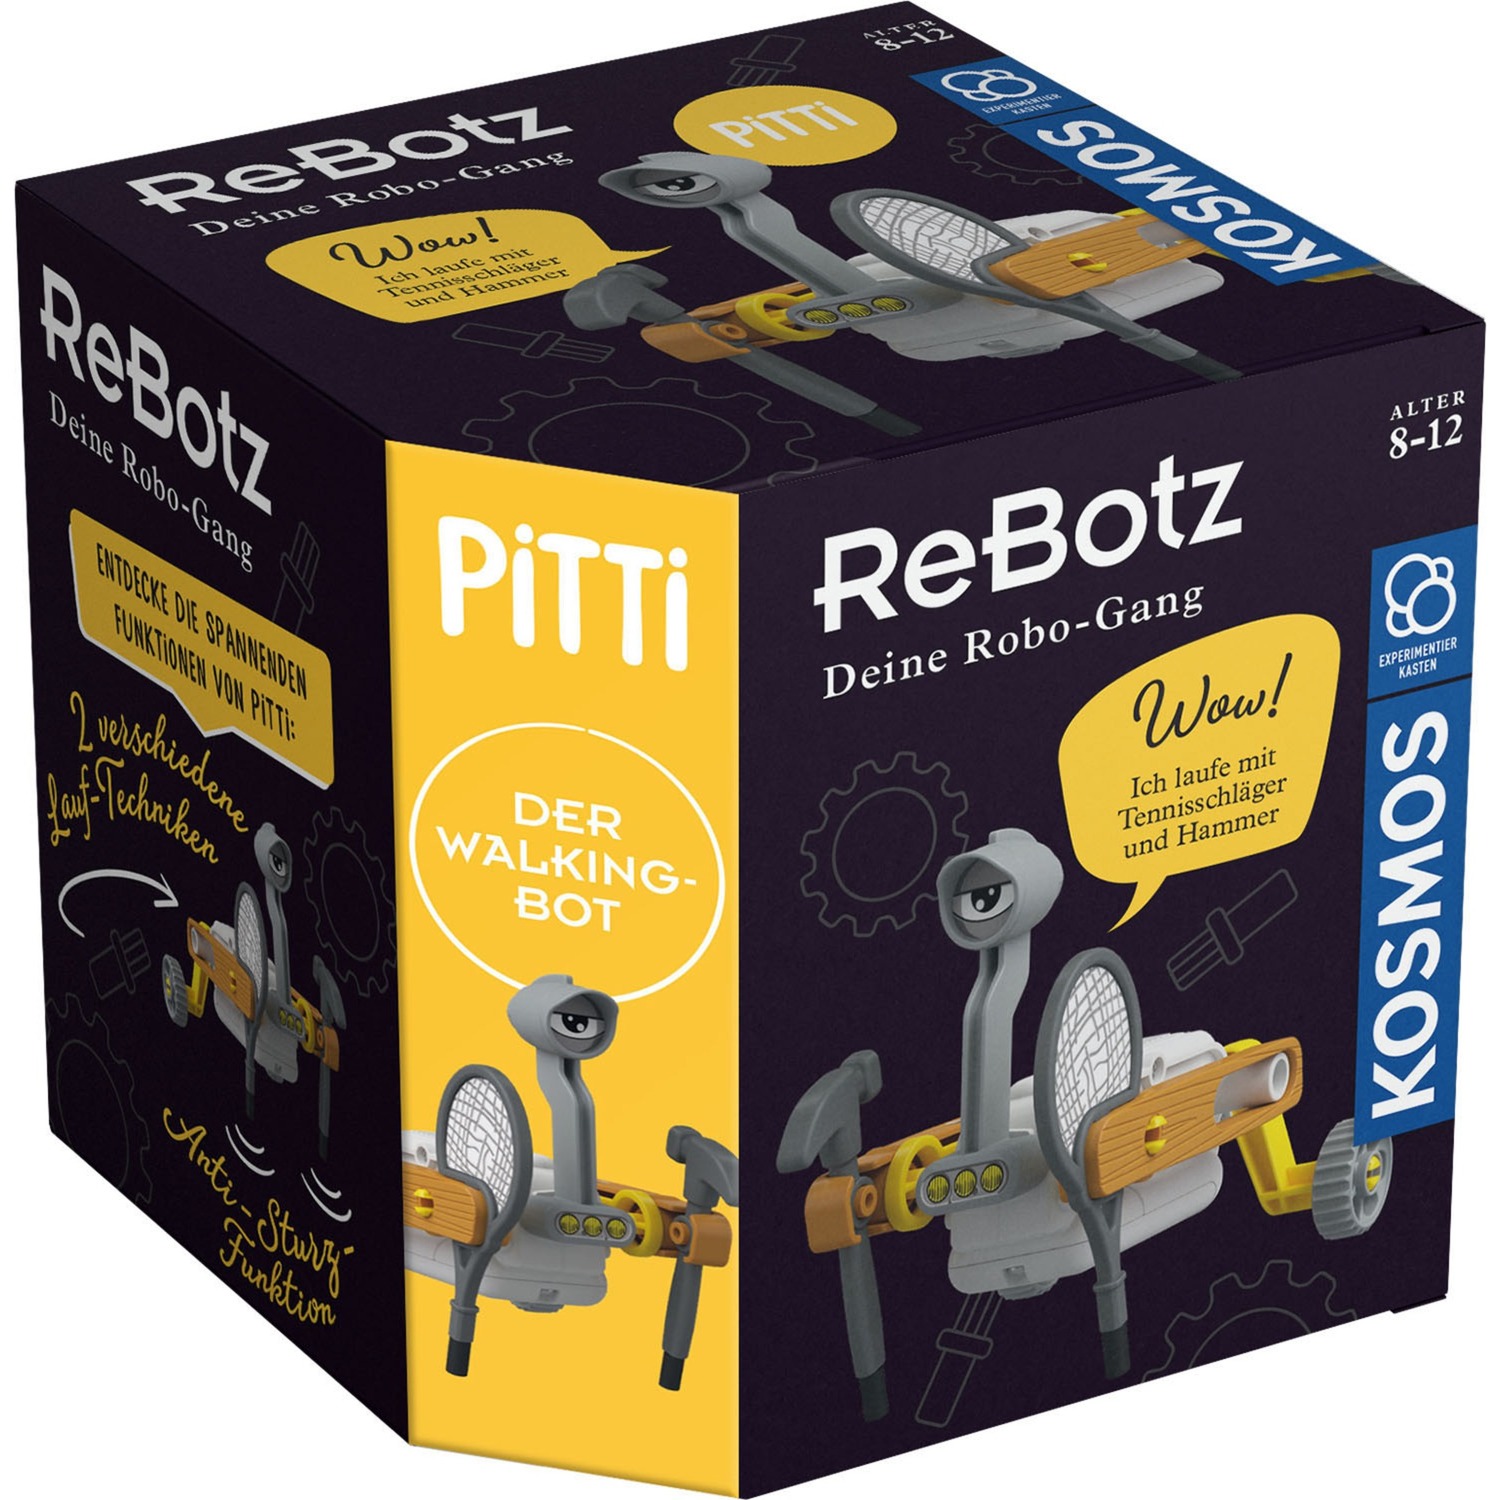 Image of Alternate - ReBotz - Pitti der Walking-Bot, Experimentierkasten online einkaufen bei Alternate